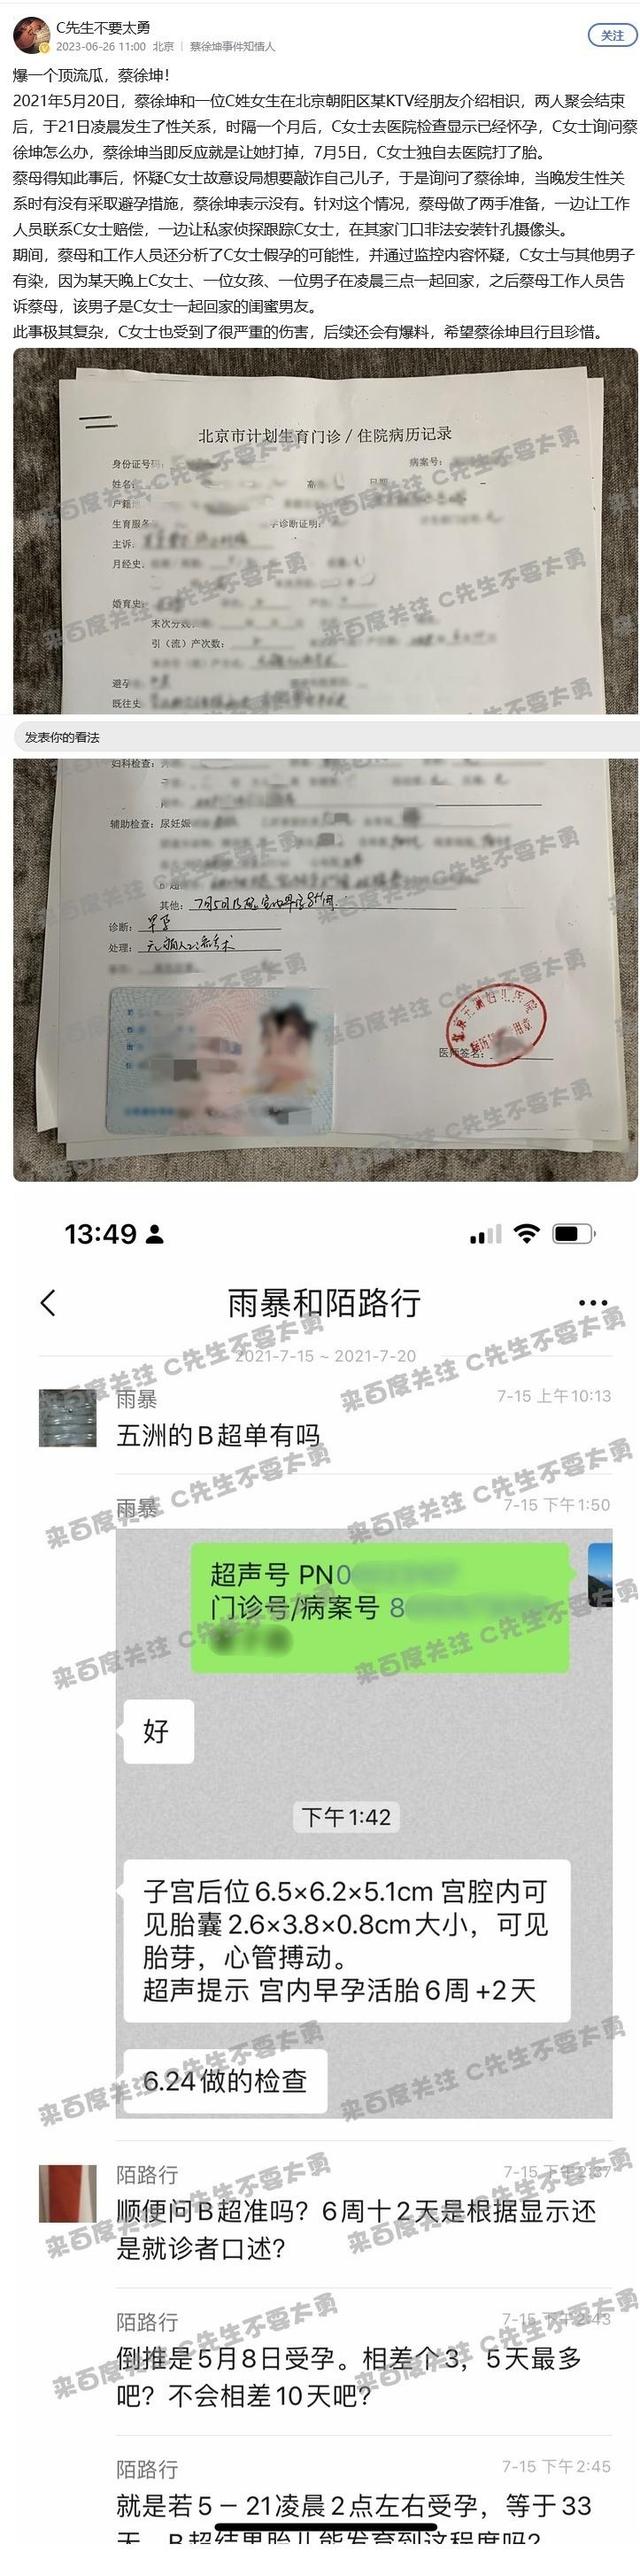 蔡徐坤在新加坡演唱会公开露面4天后，北京广告协会删除对其的风险提示，本人曾称不涉及违法行为